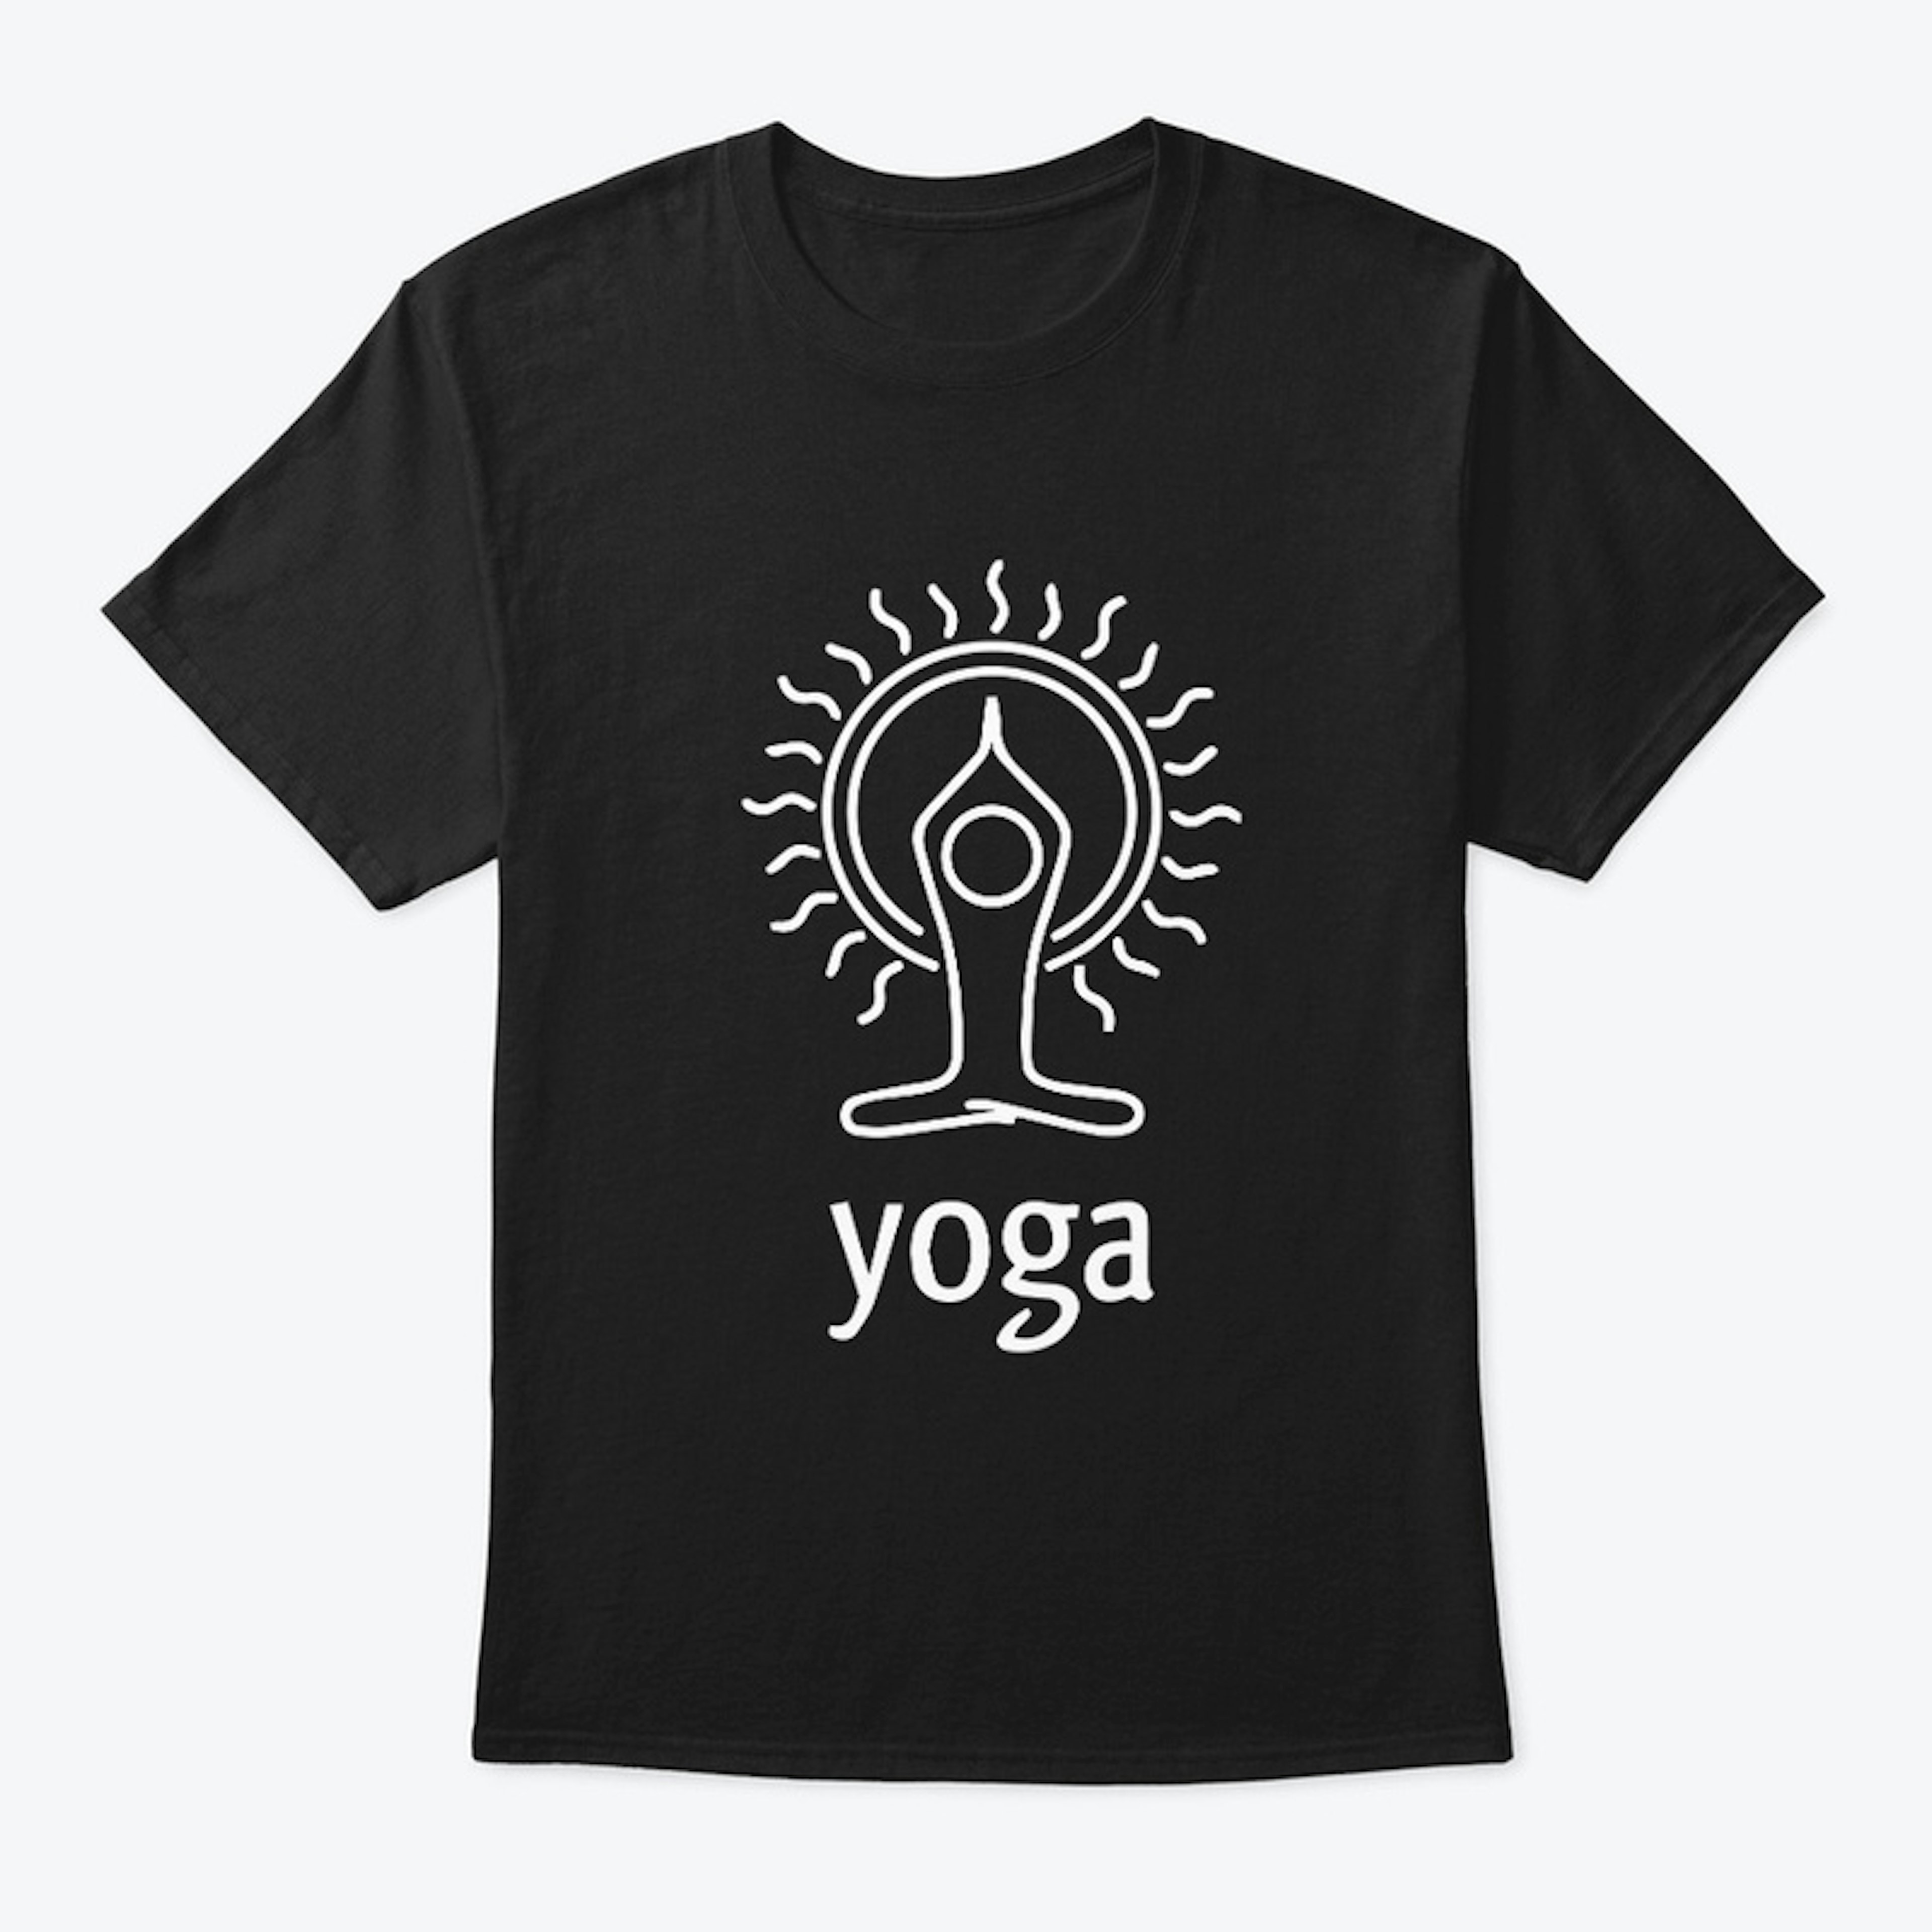  Yoga Merchandise